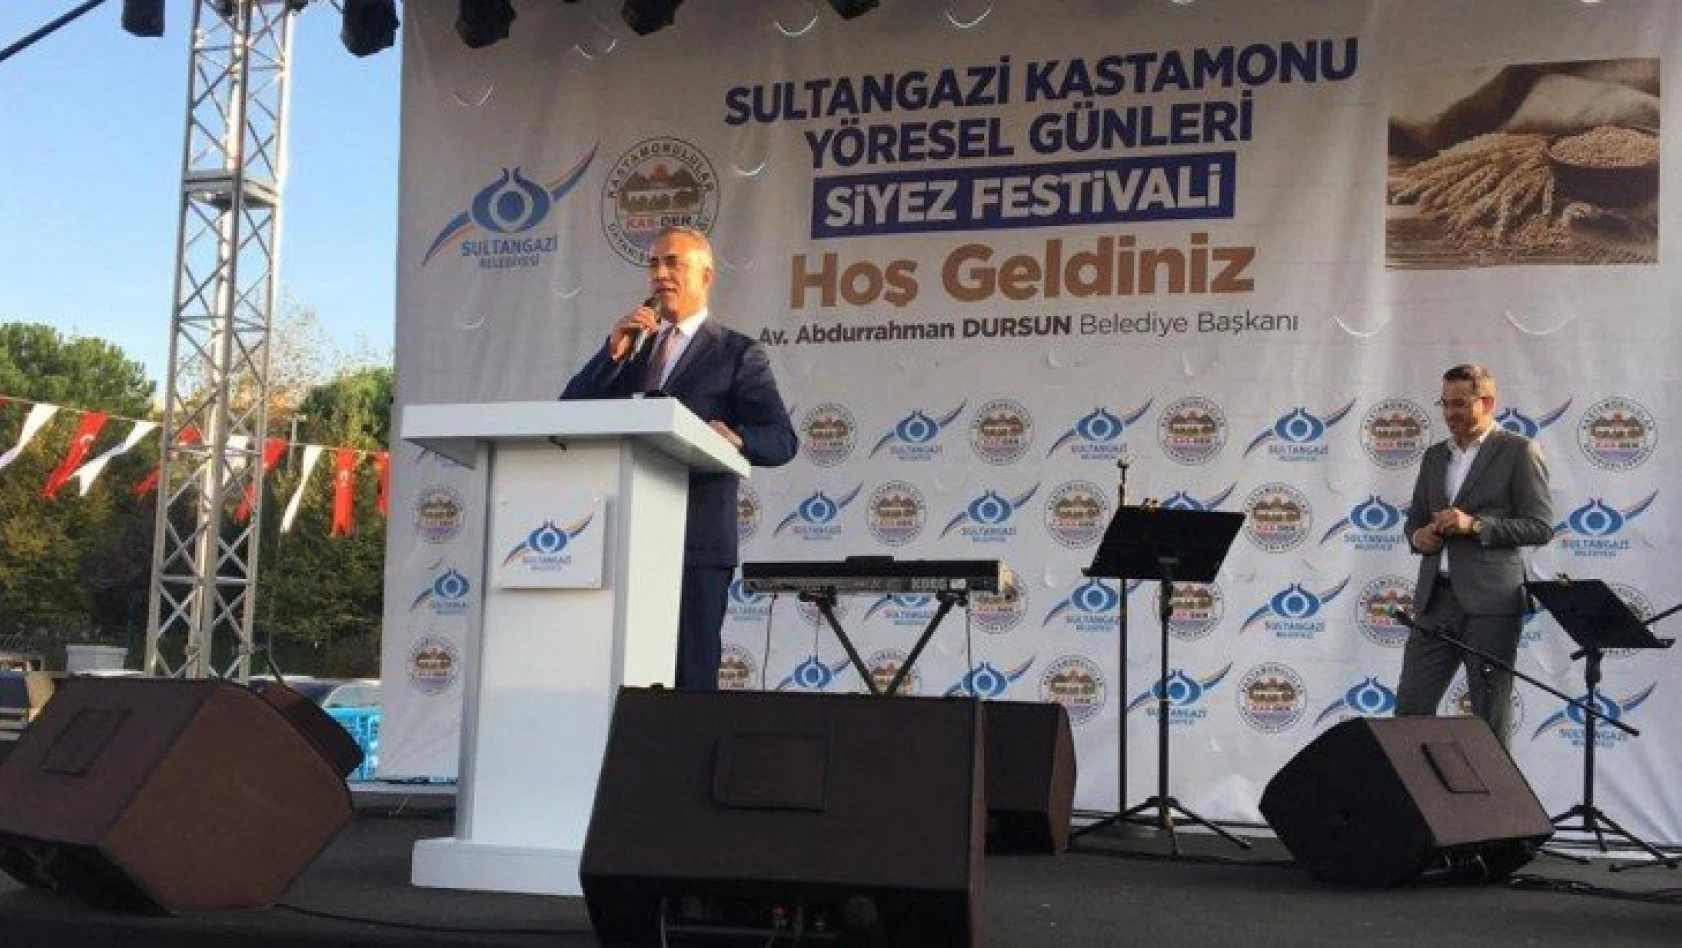 Sultangazi'de 'Siyez Festivali' başladı